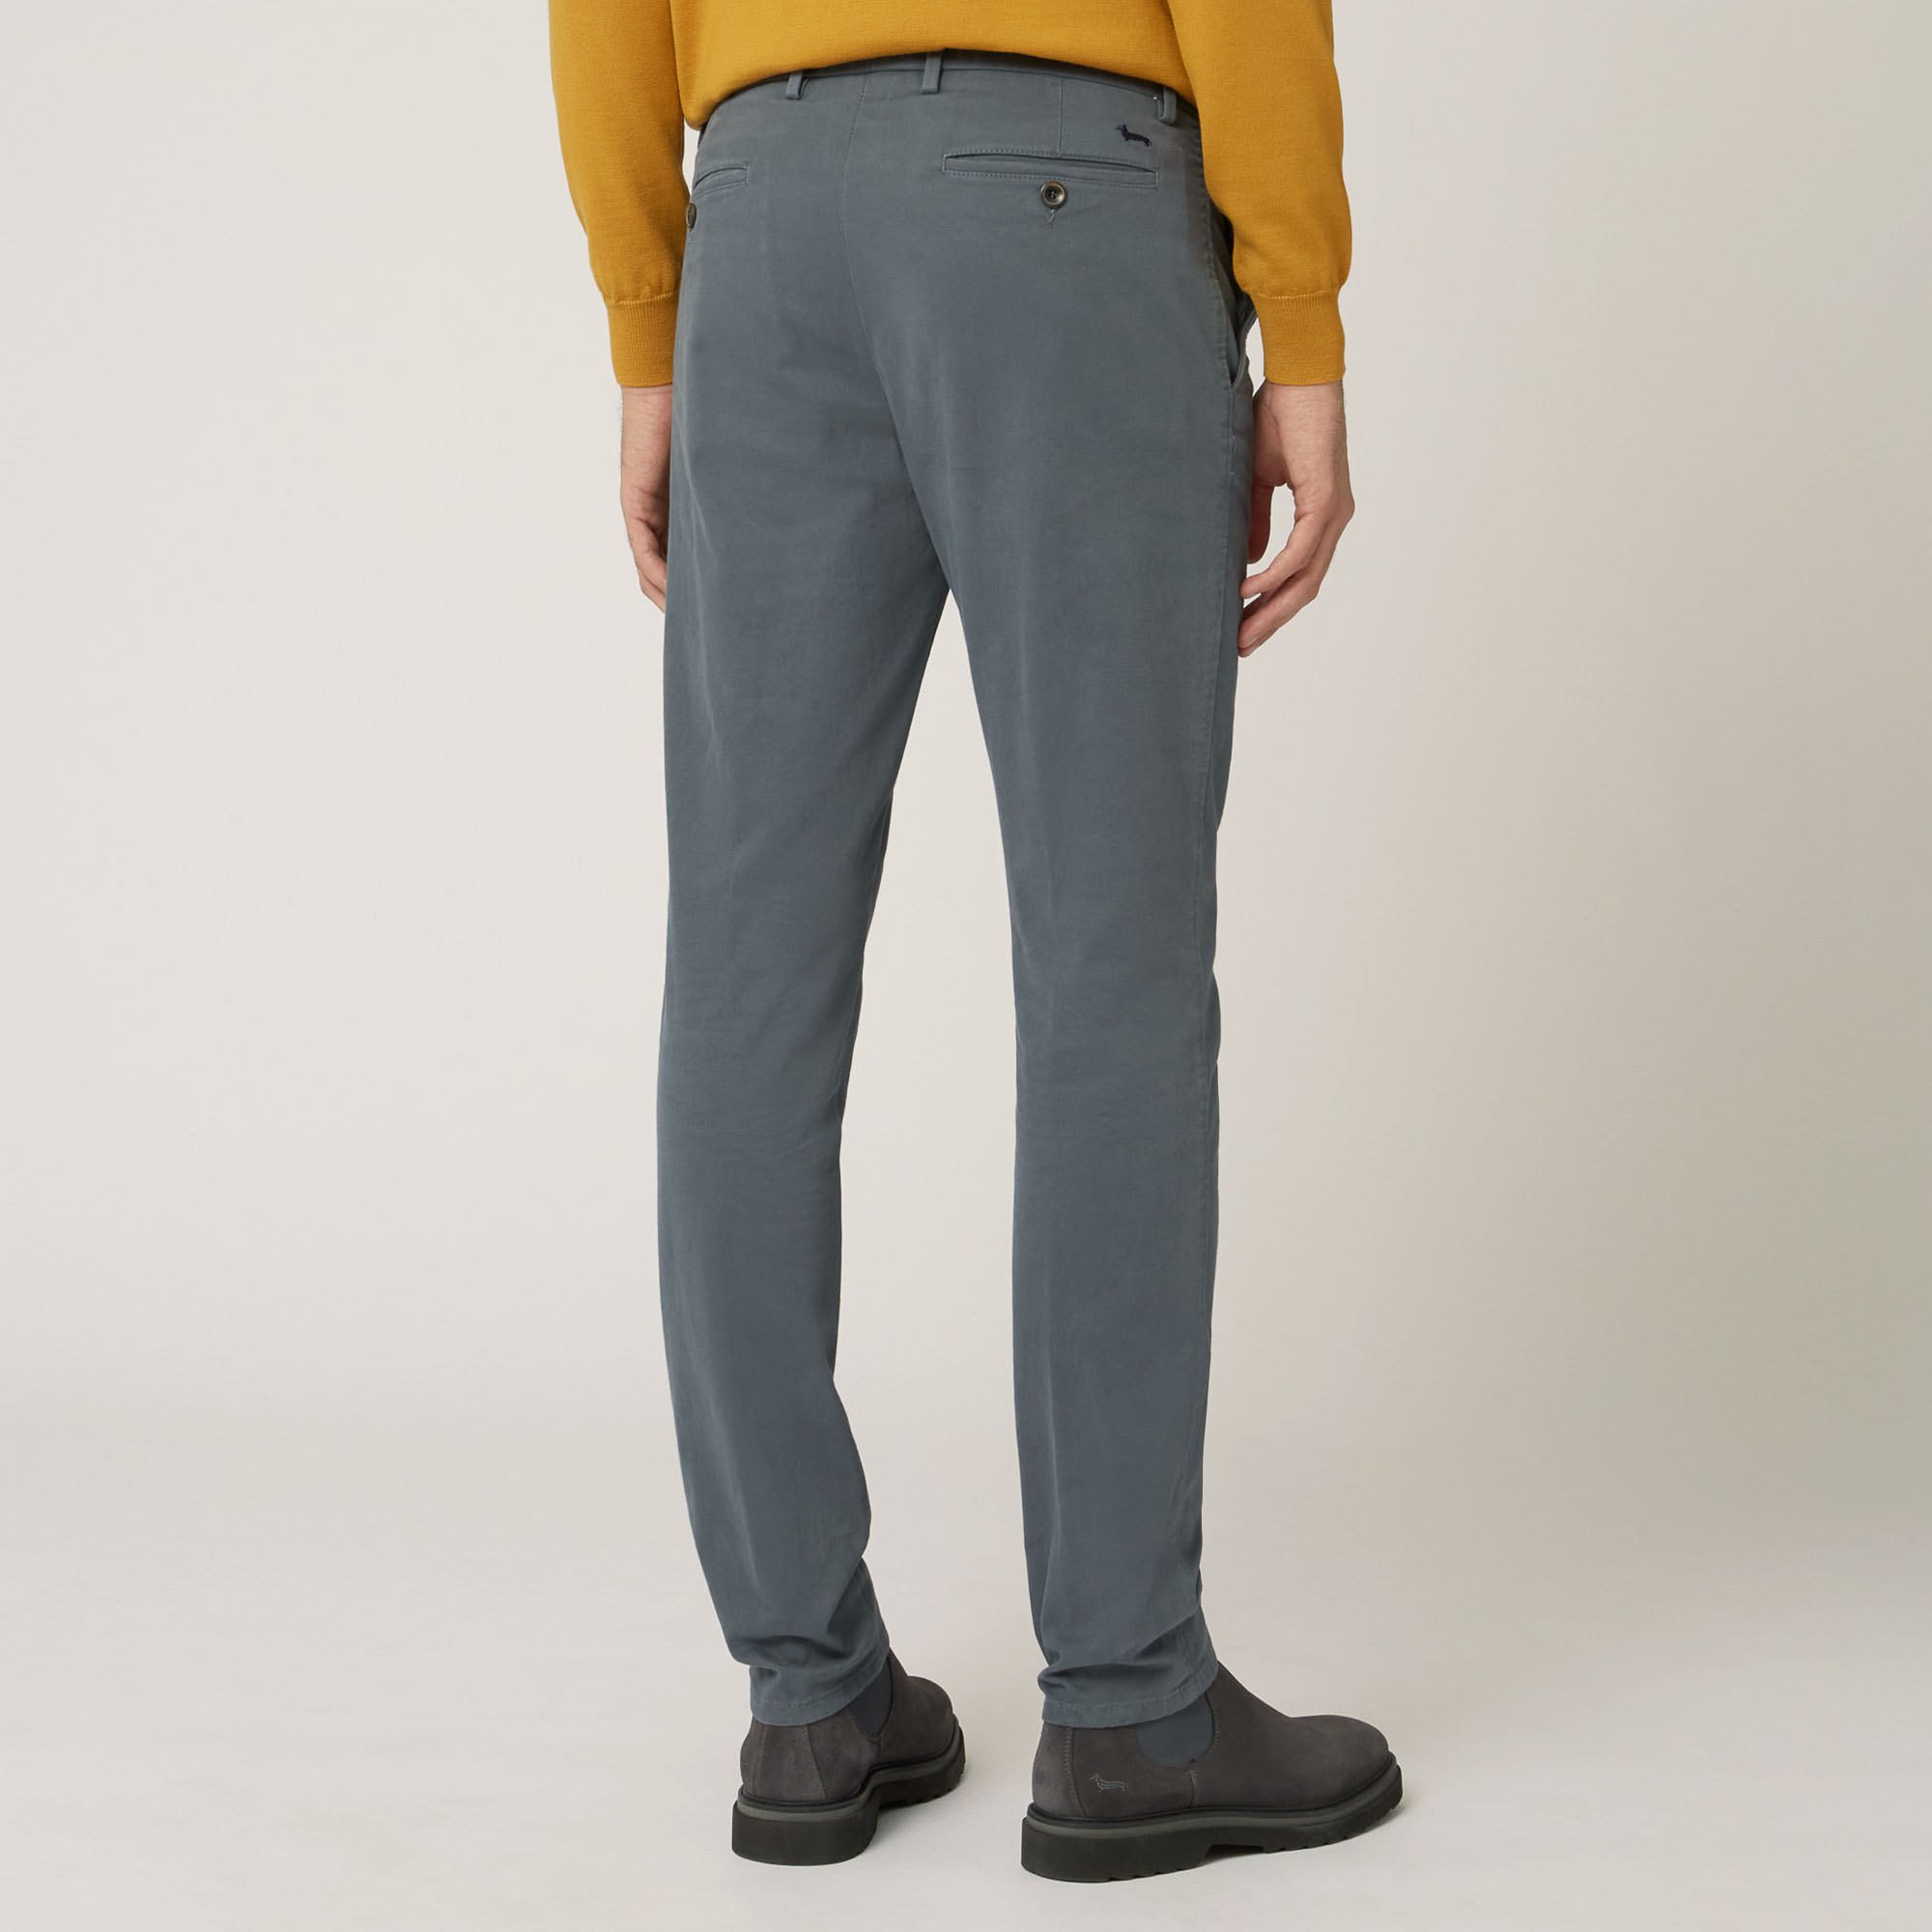 Pantalone Chino In Cotone Stretch Progetto Prisma, Grigio, large image number 1